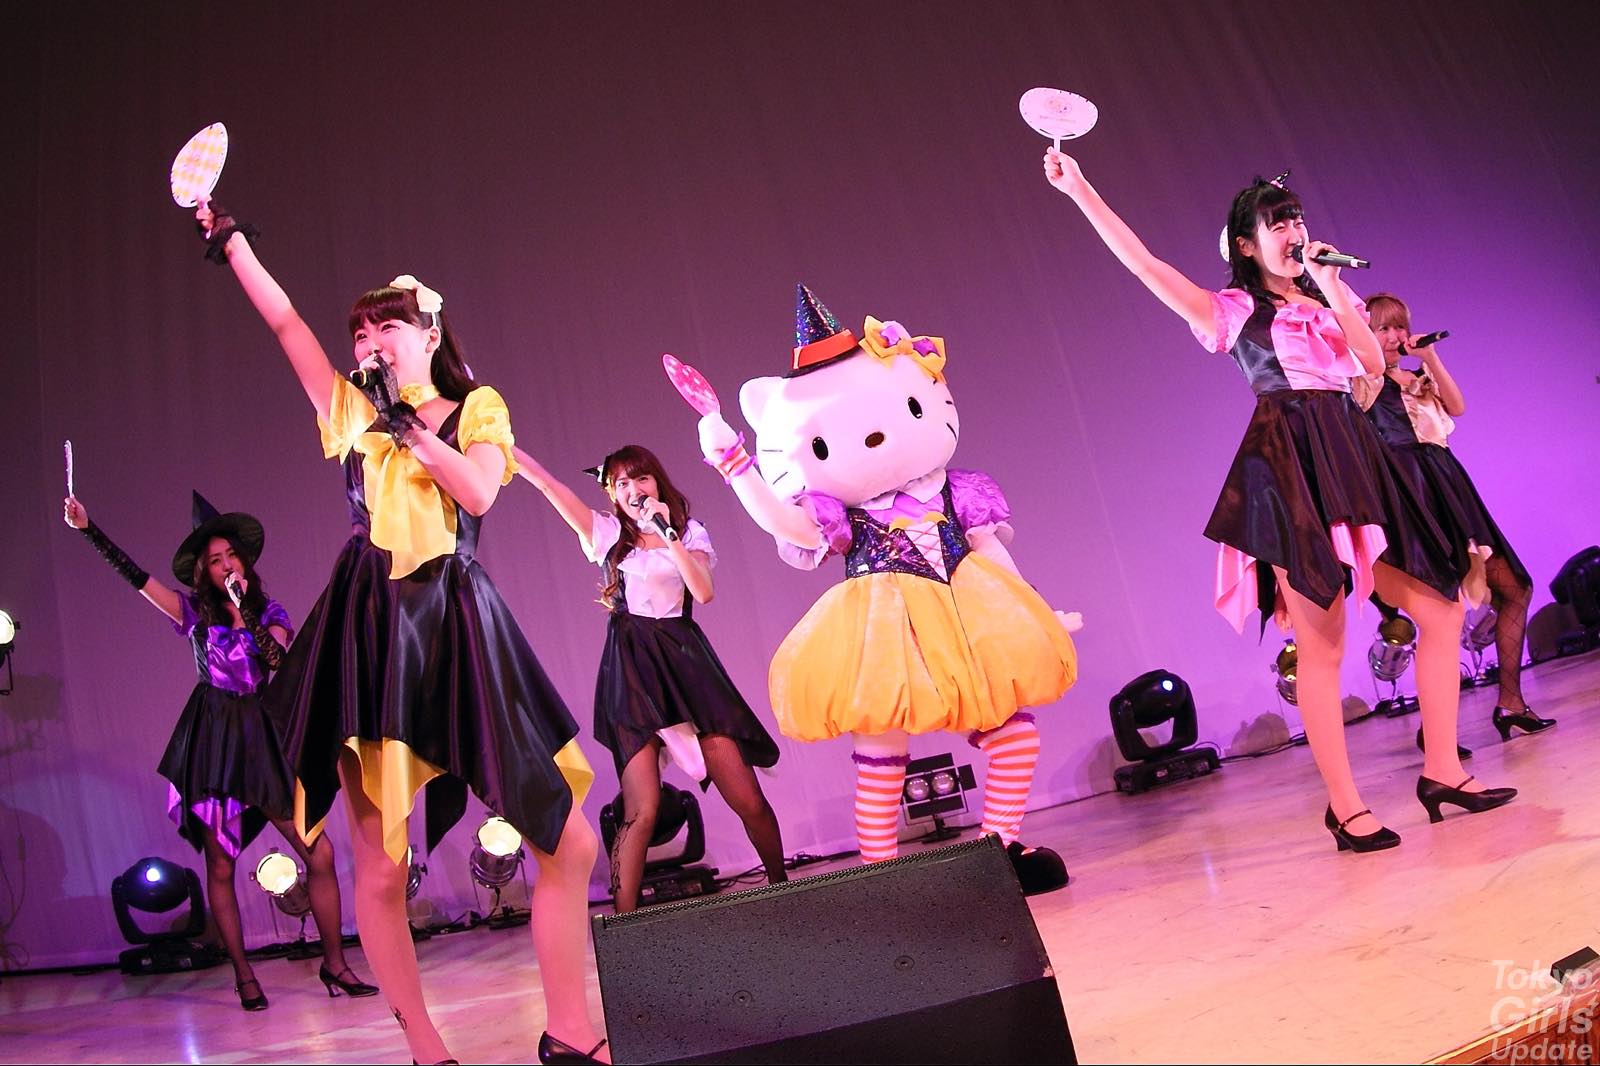 SUPER☆GiRLS, Cheeky Parade, GEM Take Over Sanrio Puroland for Halloween Event!